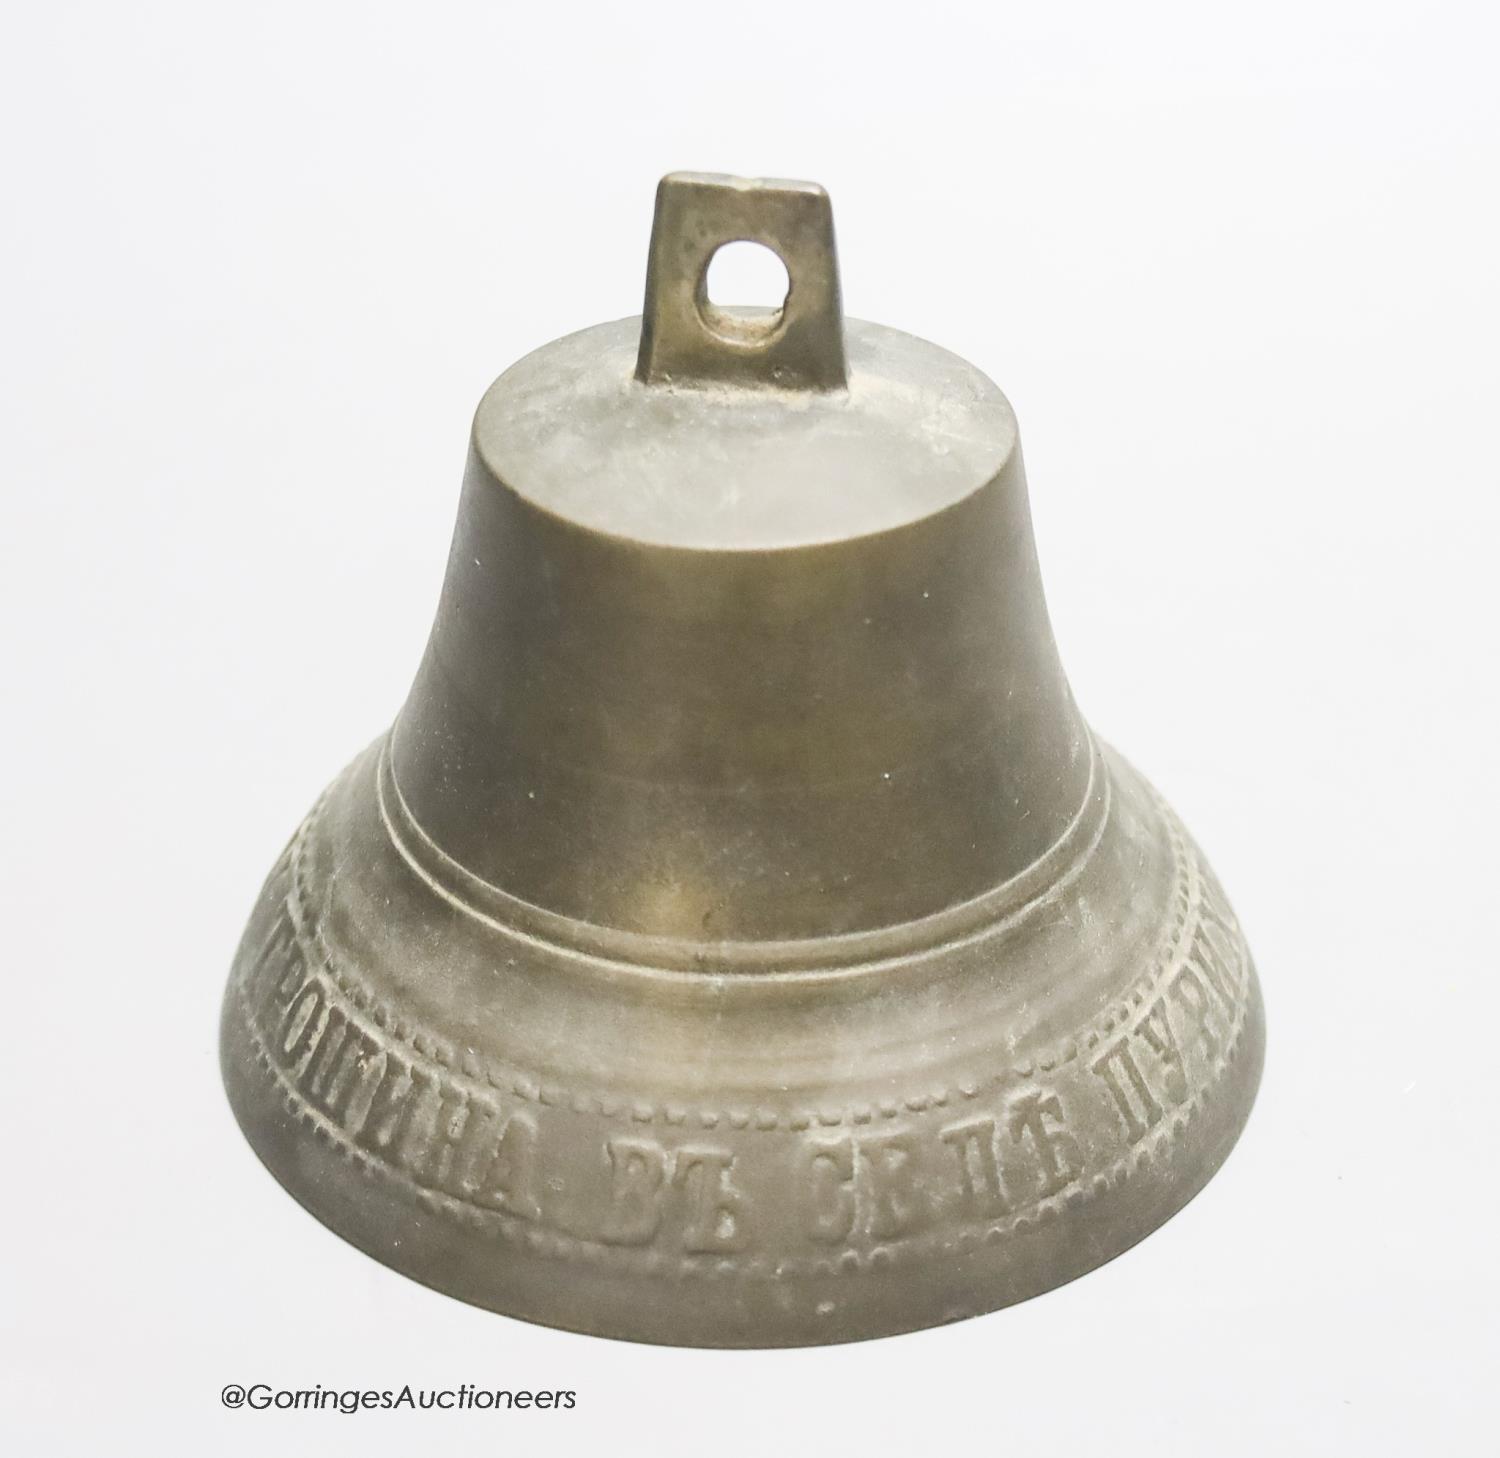 A Russian bell, 9.5cm